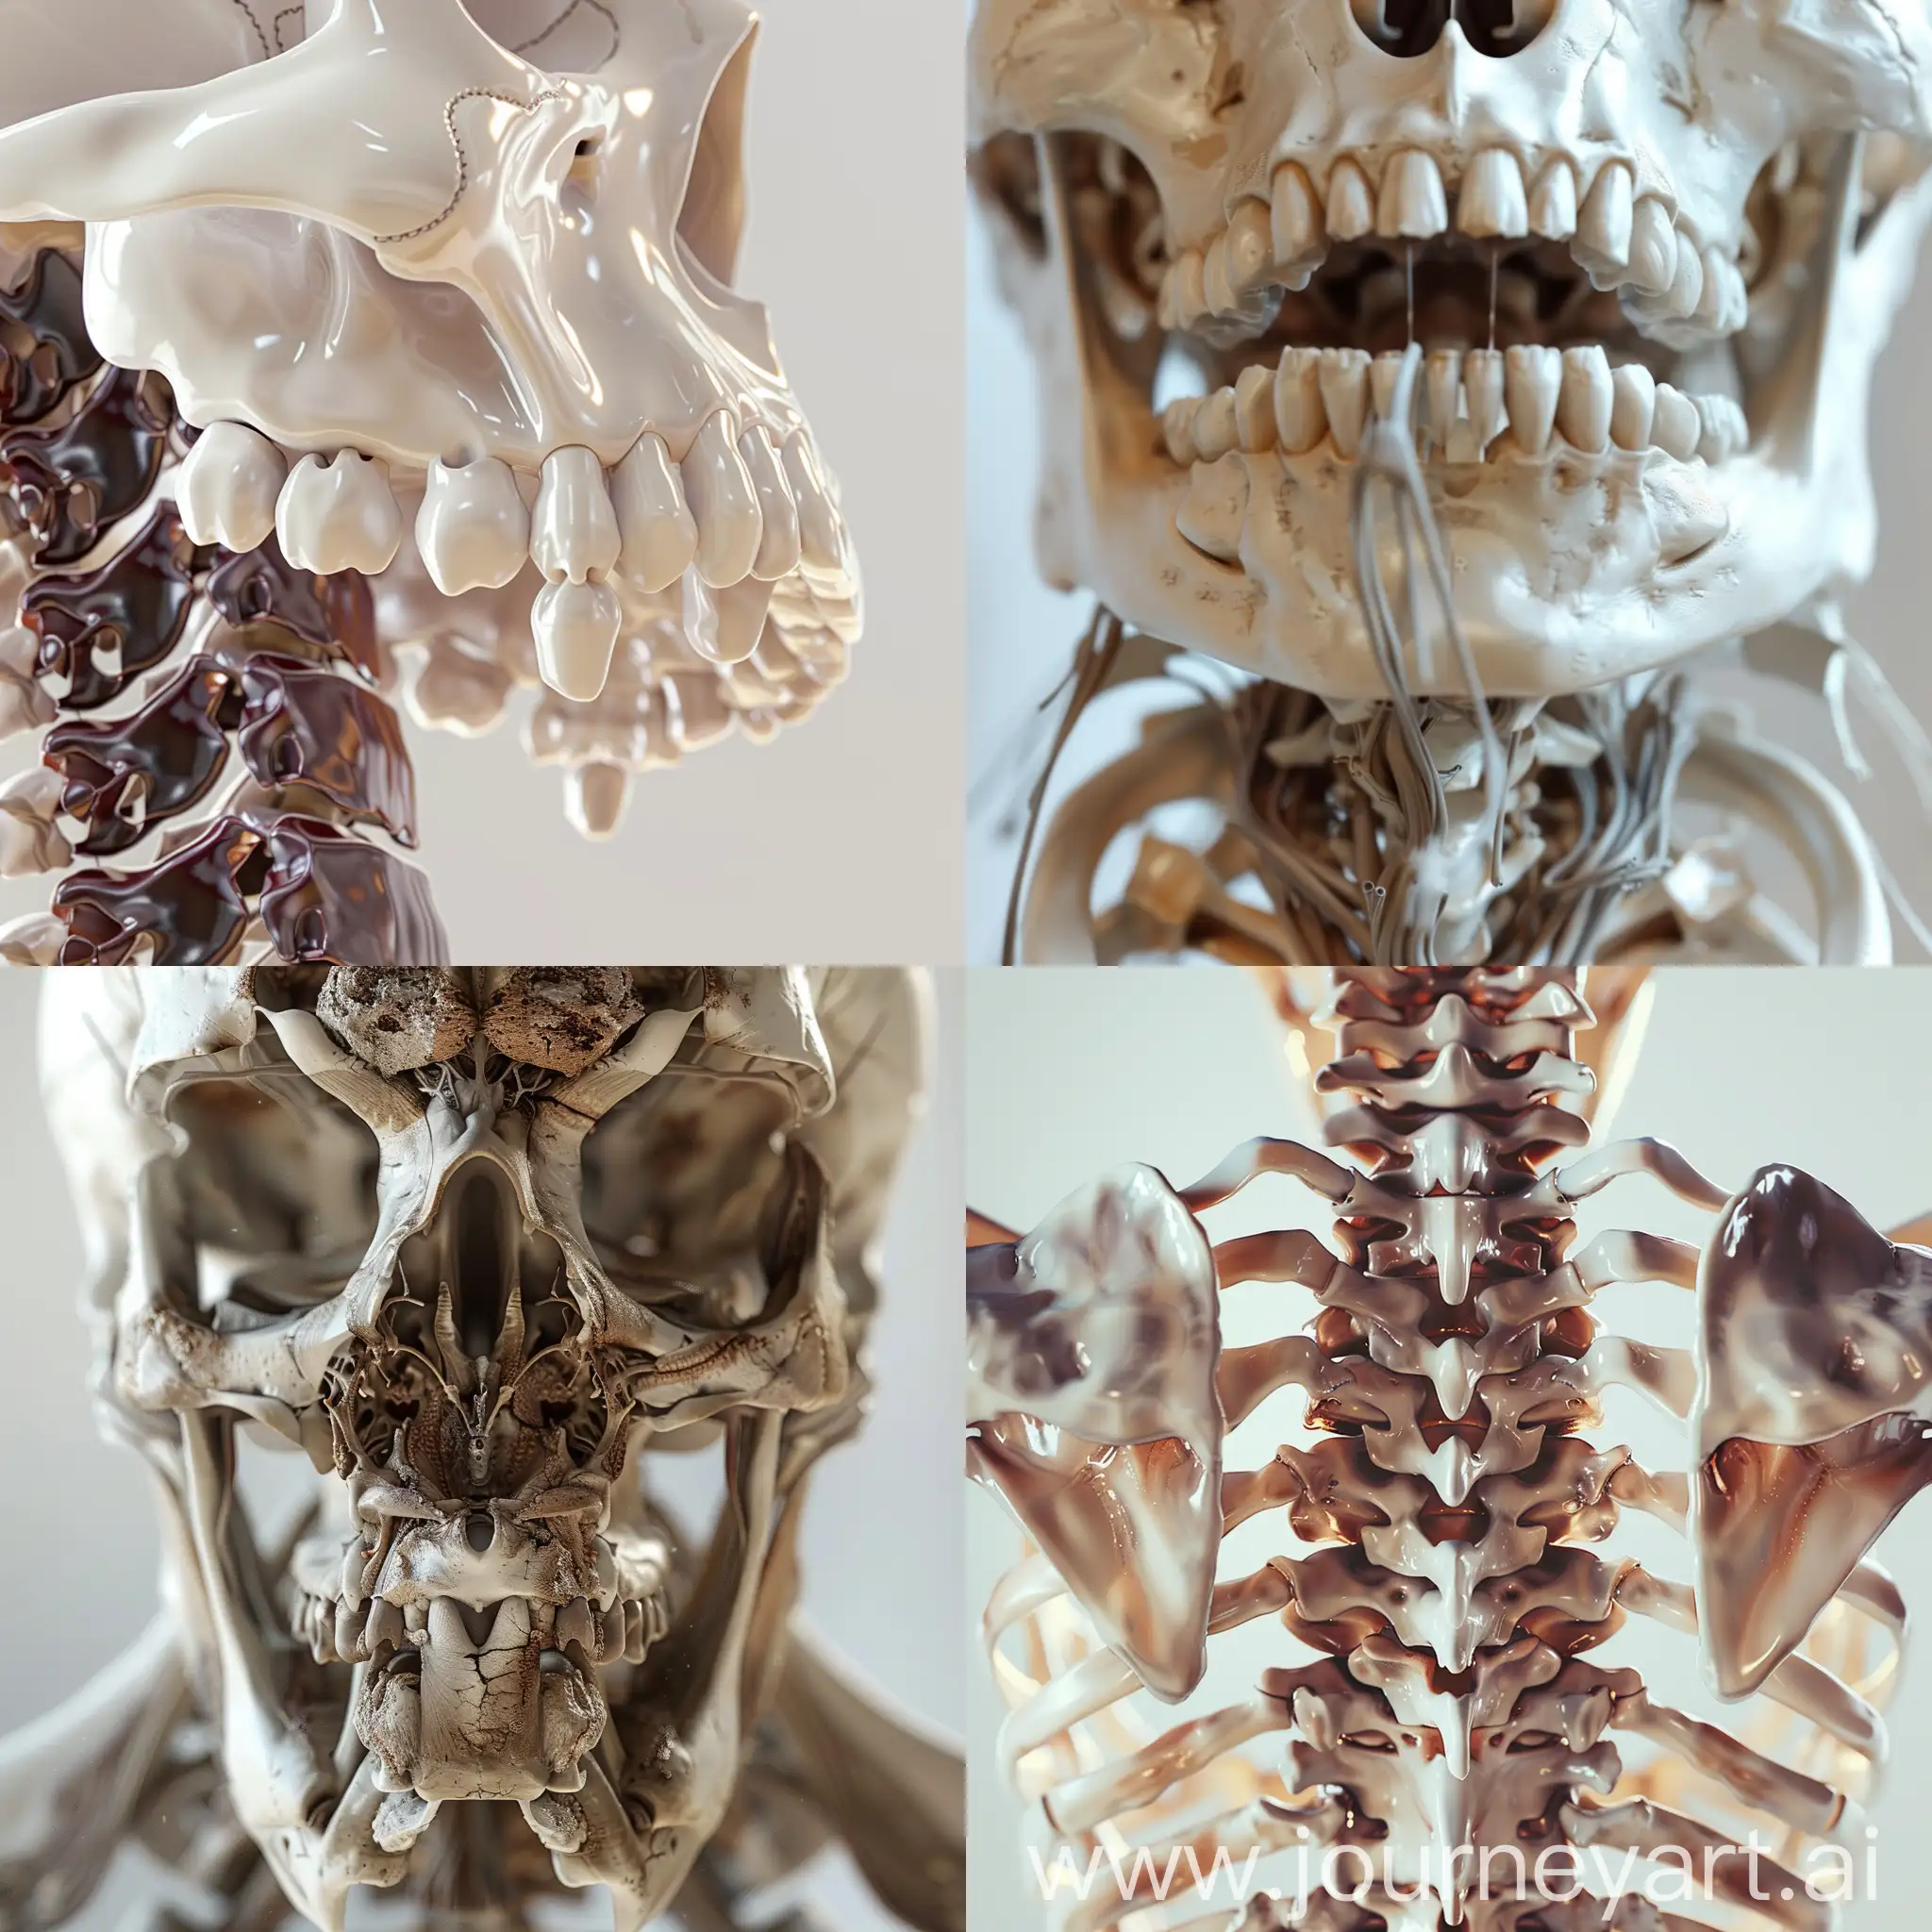 清晰呈现解剖细节，医学解剖风格，光影分明，白色骨骼与深棕色颅底内面观结构，空间透视，4K高清细节，--ar 1:1